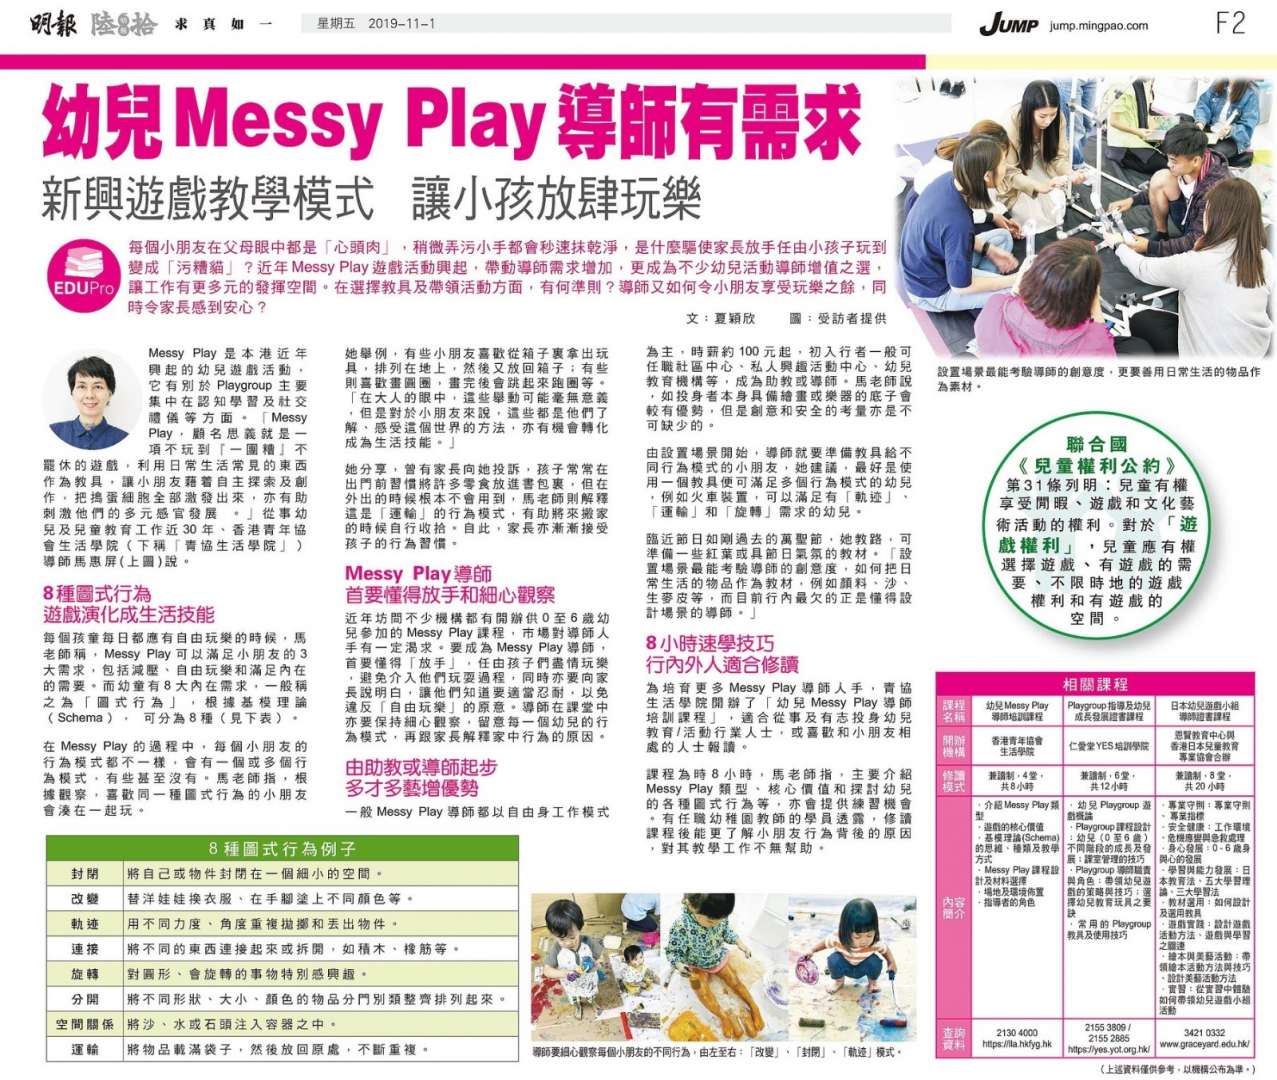 20191101_明報Jump_Messy Play